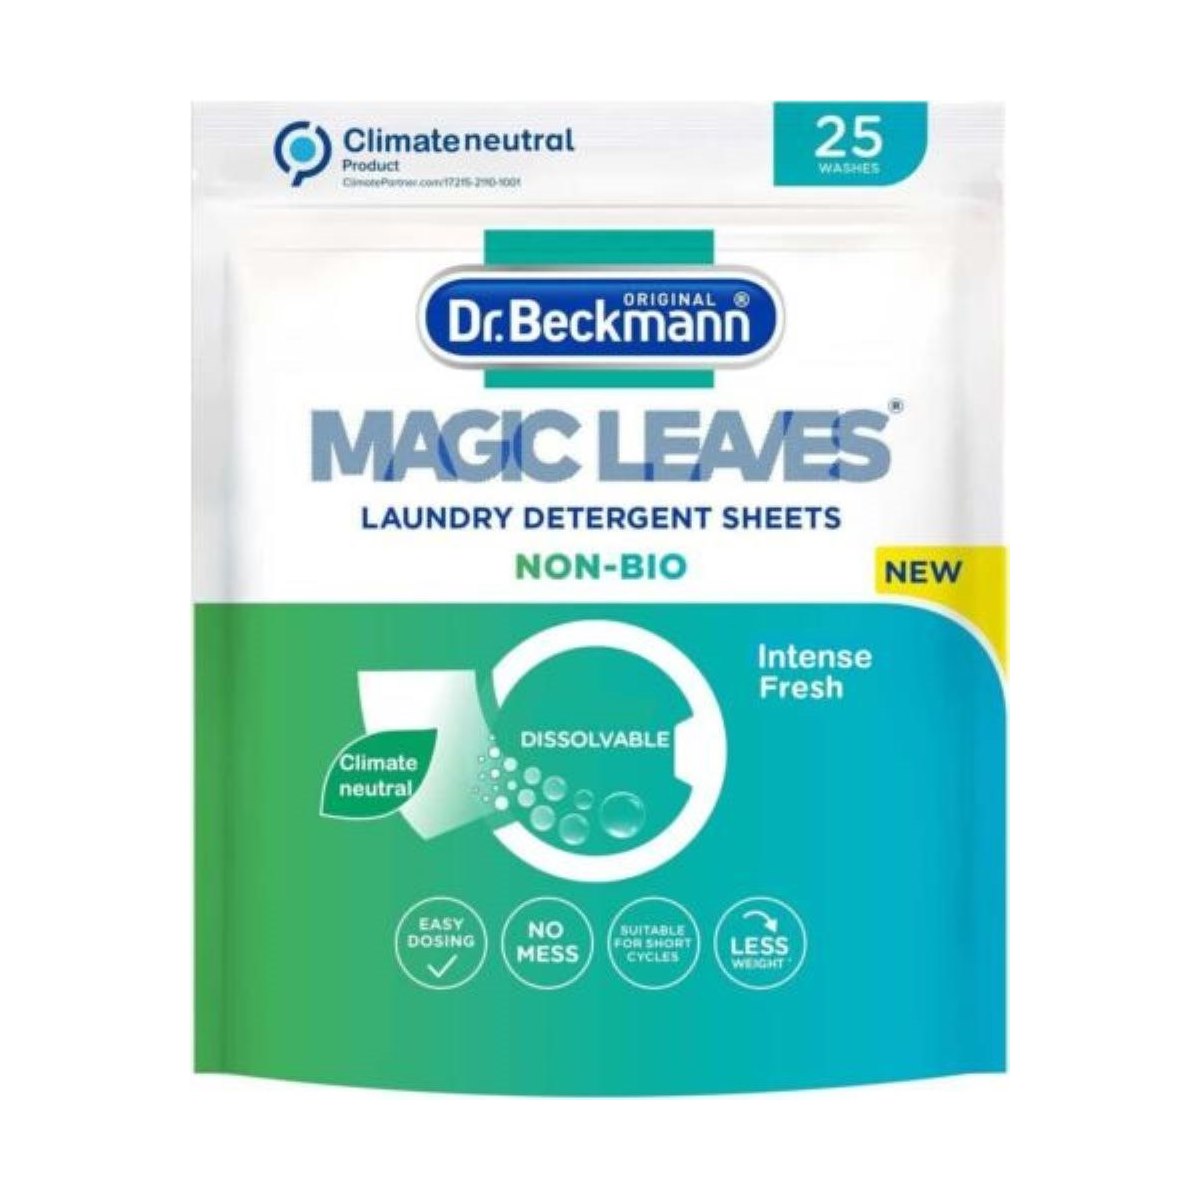 Dr Beckmann Magic Leaves Non-Bio 25 Washes Intense Fresh